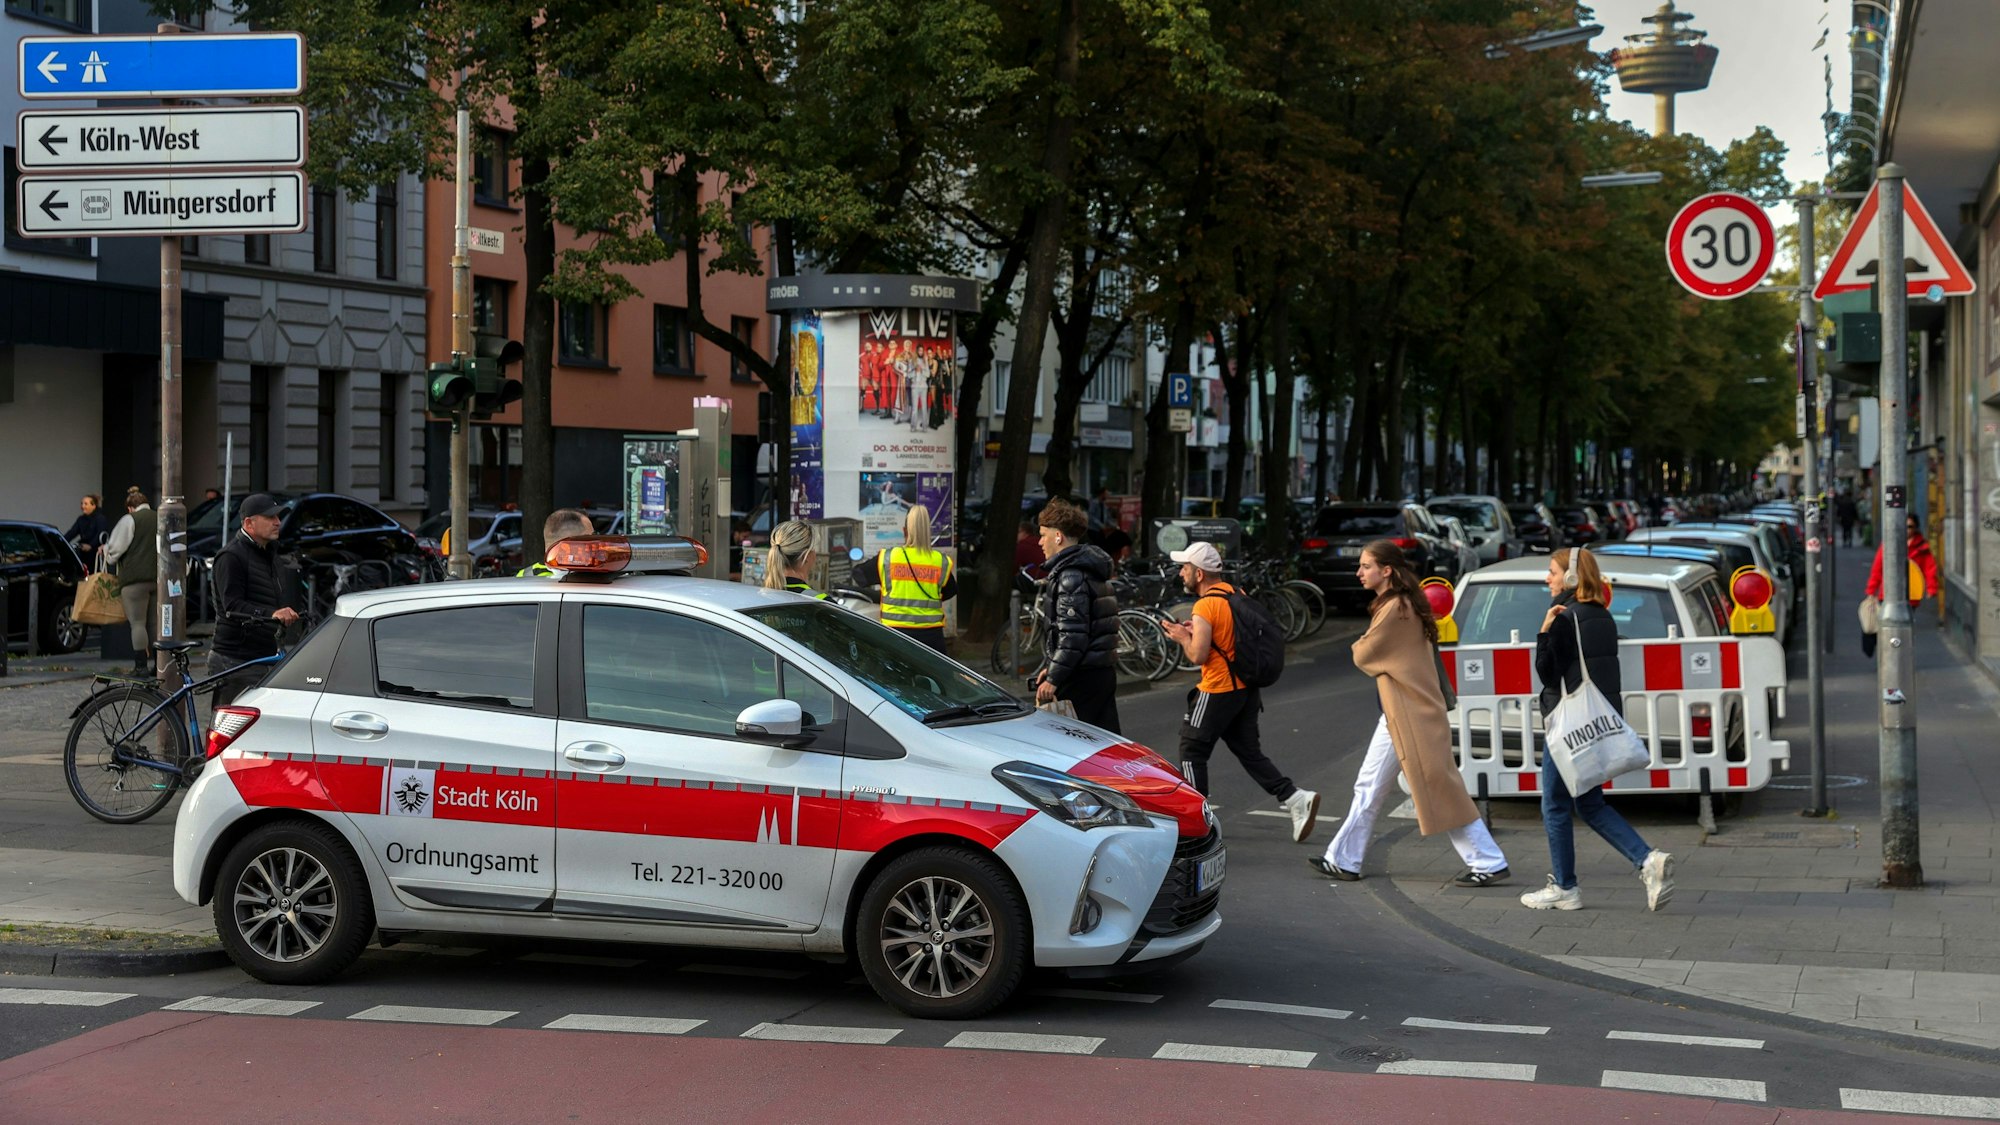 Ein Fahrzeug des Ordnungsamtes sperrt eine Straße im Belgischen Viertel.